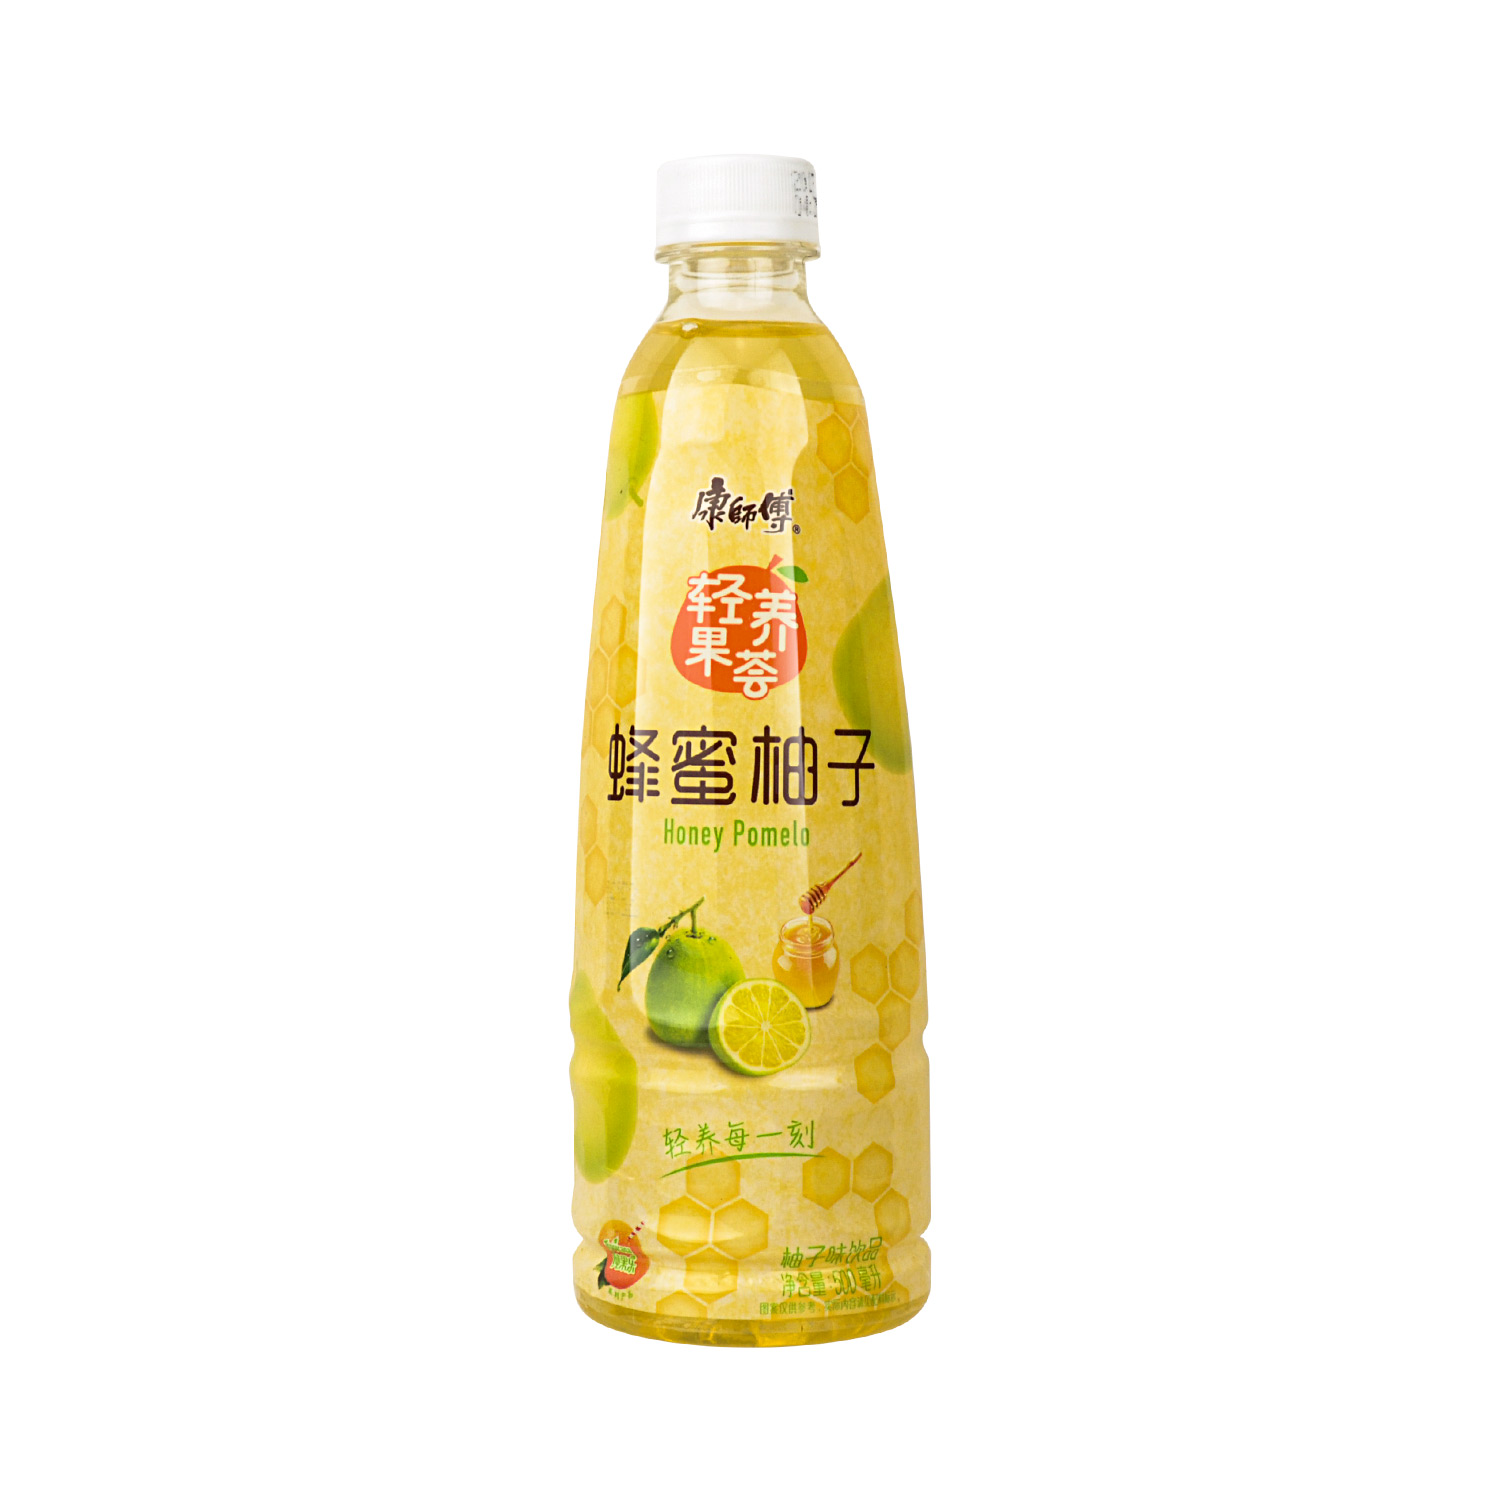 康师傅 蜂蜜柚子茶(10.30) | KSF Honey Grapefruit 500ml - HappyGo Asian Market